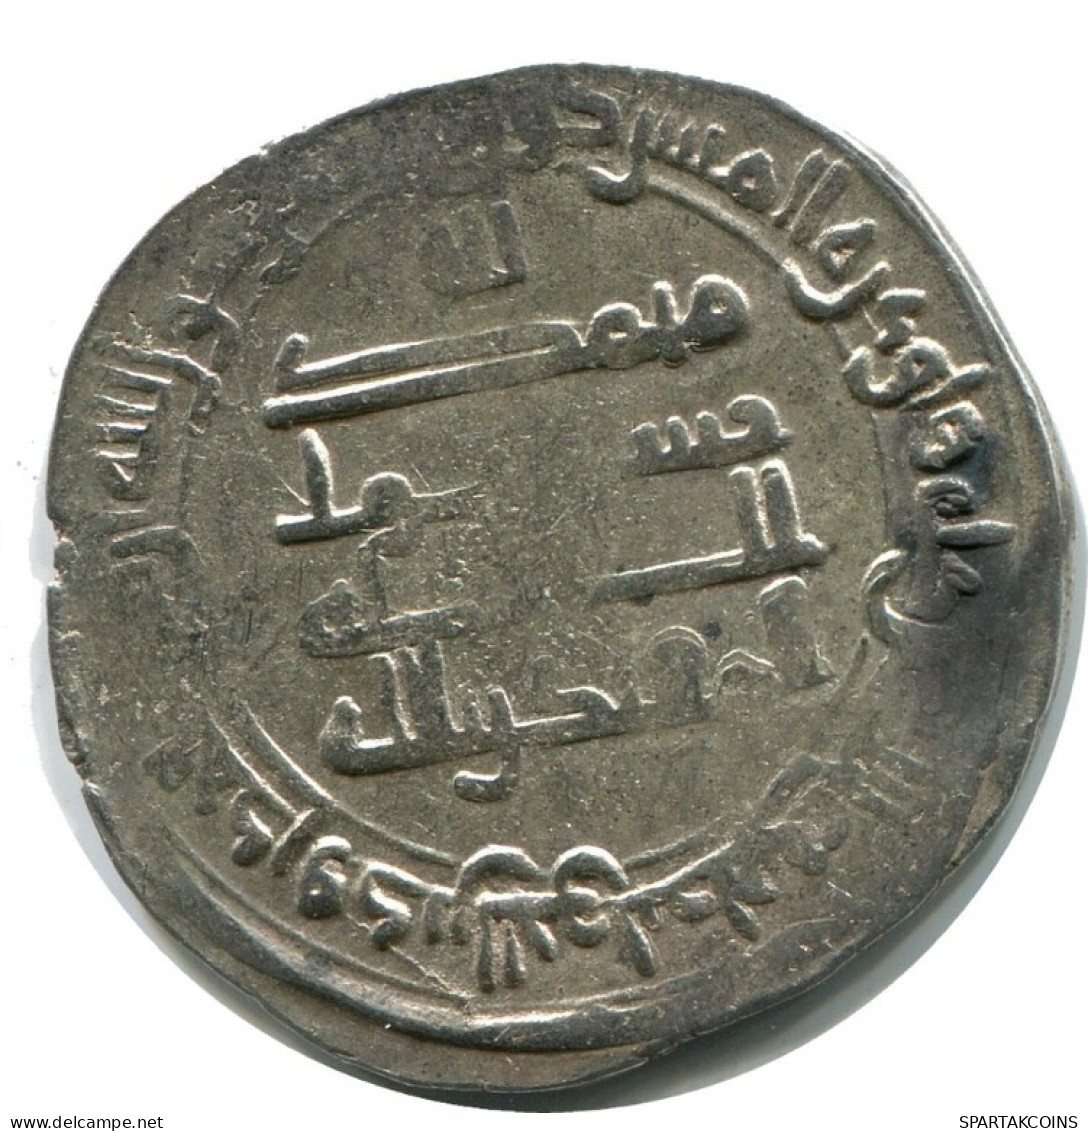 ABBASID AL-MUQTADIR AH 295-320/ 908-932 AD Silver DIRHAM #AH175.45.F.A - Oriental